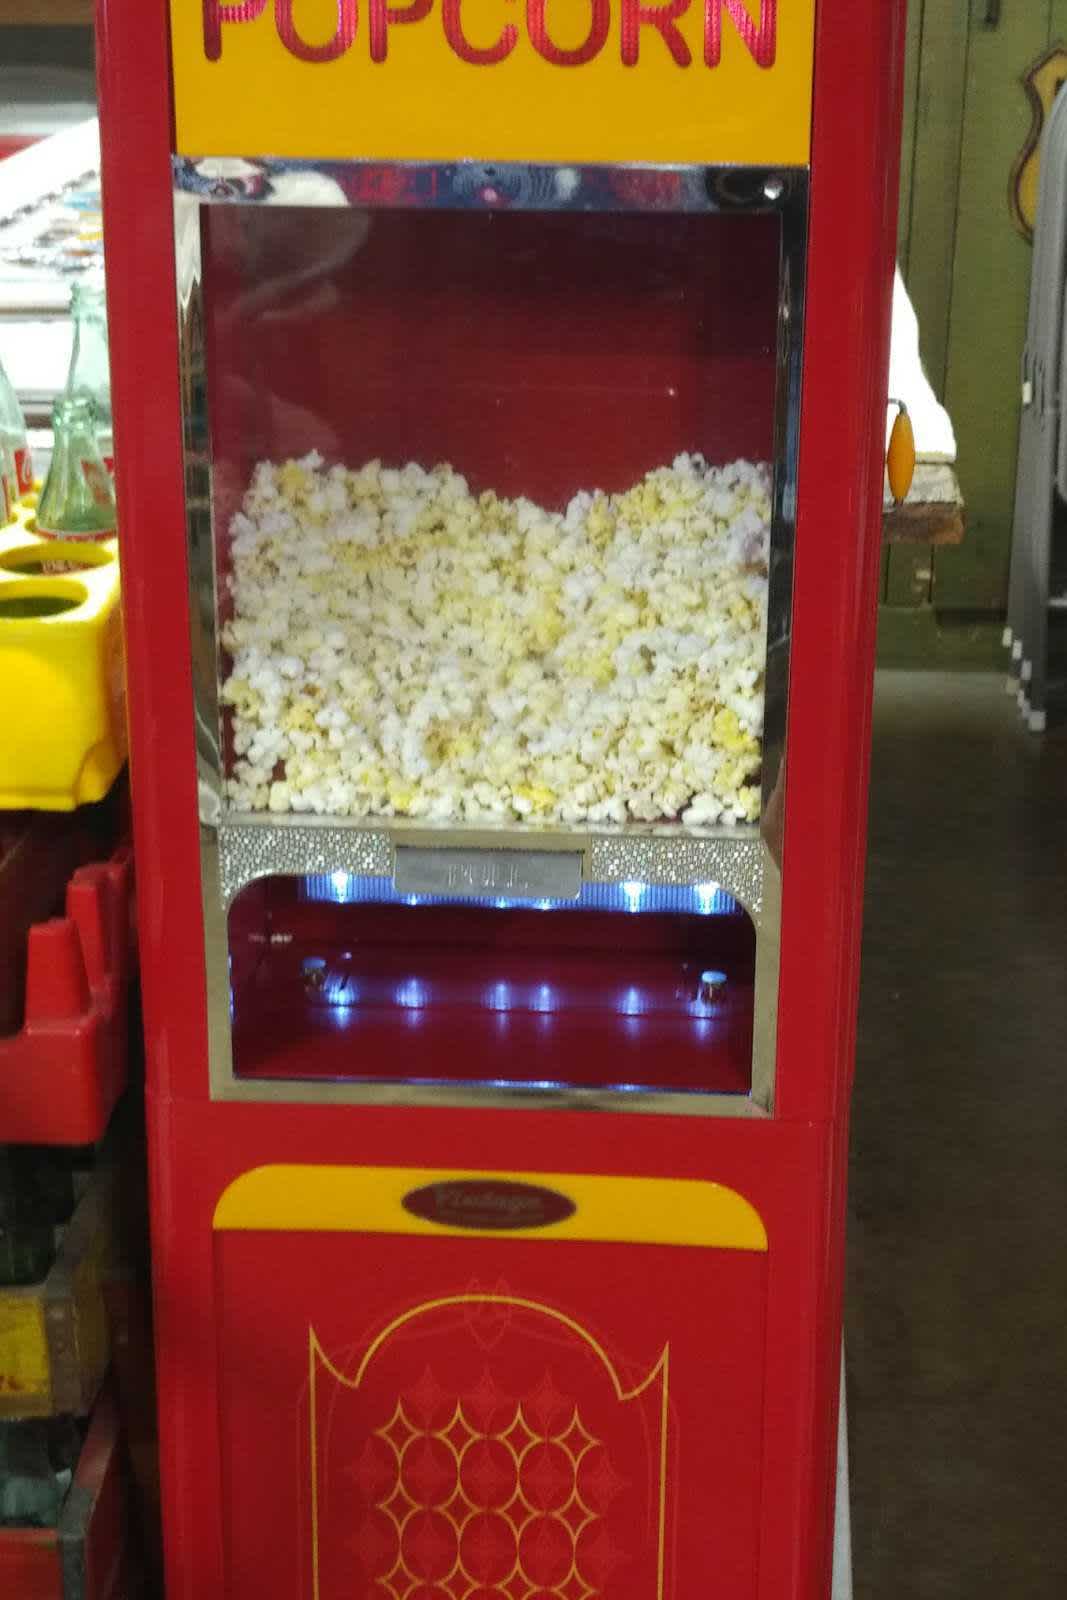 Gardner - chatka coca-coli i maszyna do popcornu